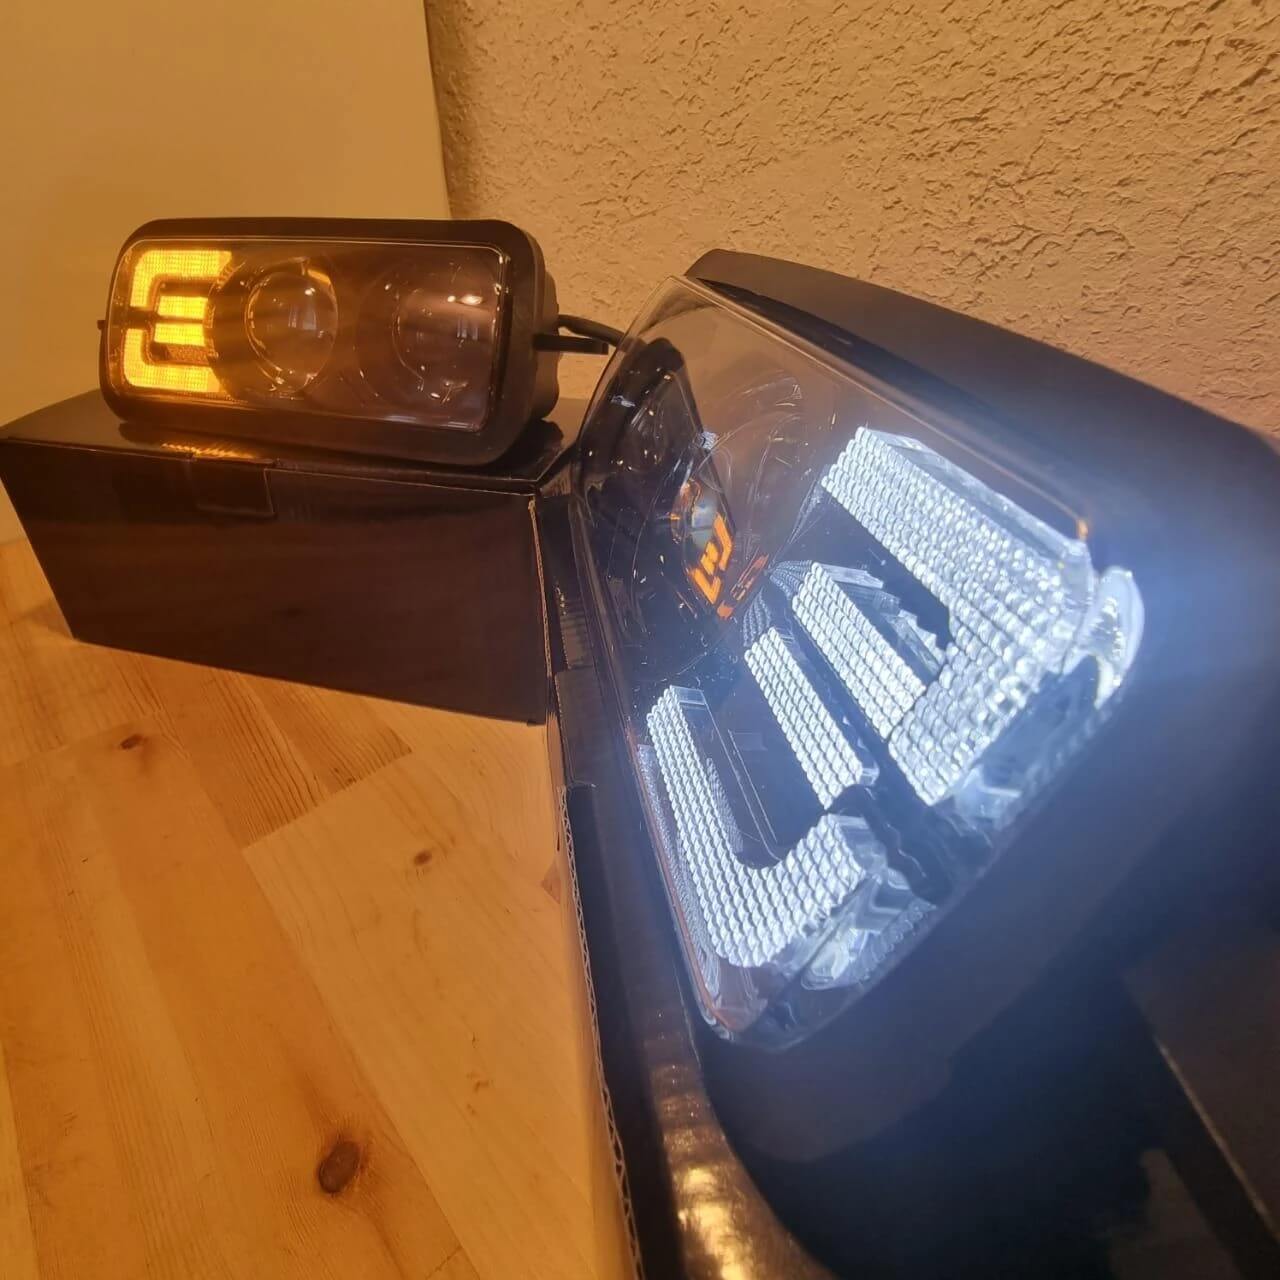 1 Set LED Daytime Running Light Fog Light Fit For Lada Niva 4X4 1995-2020